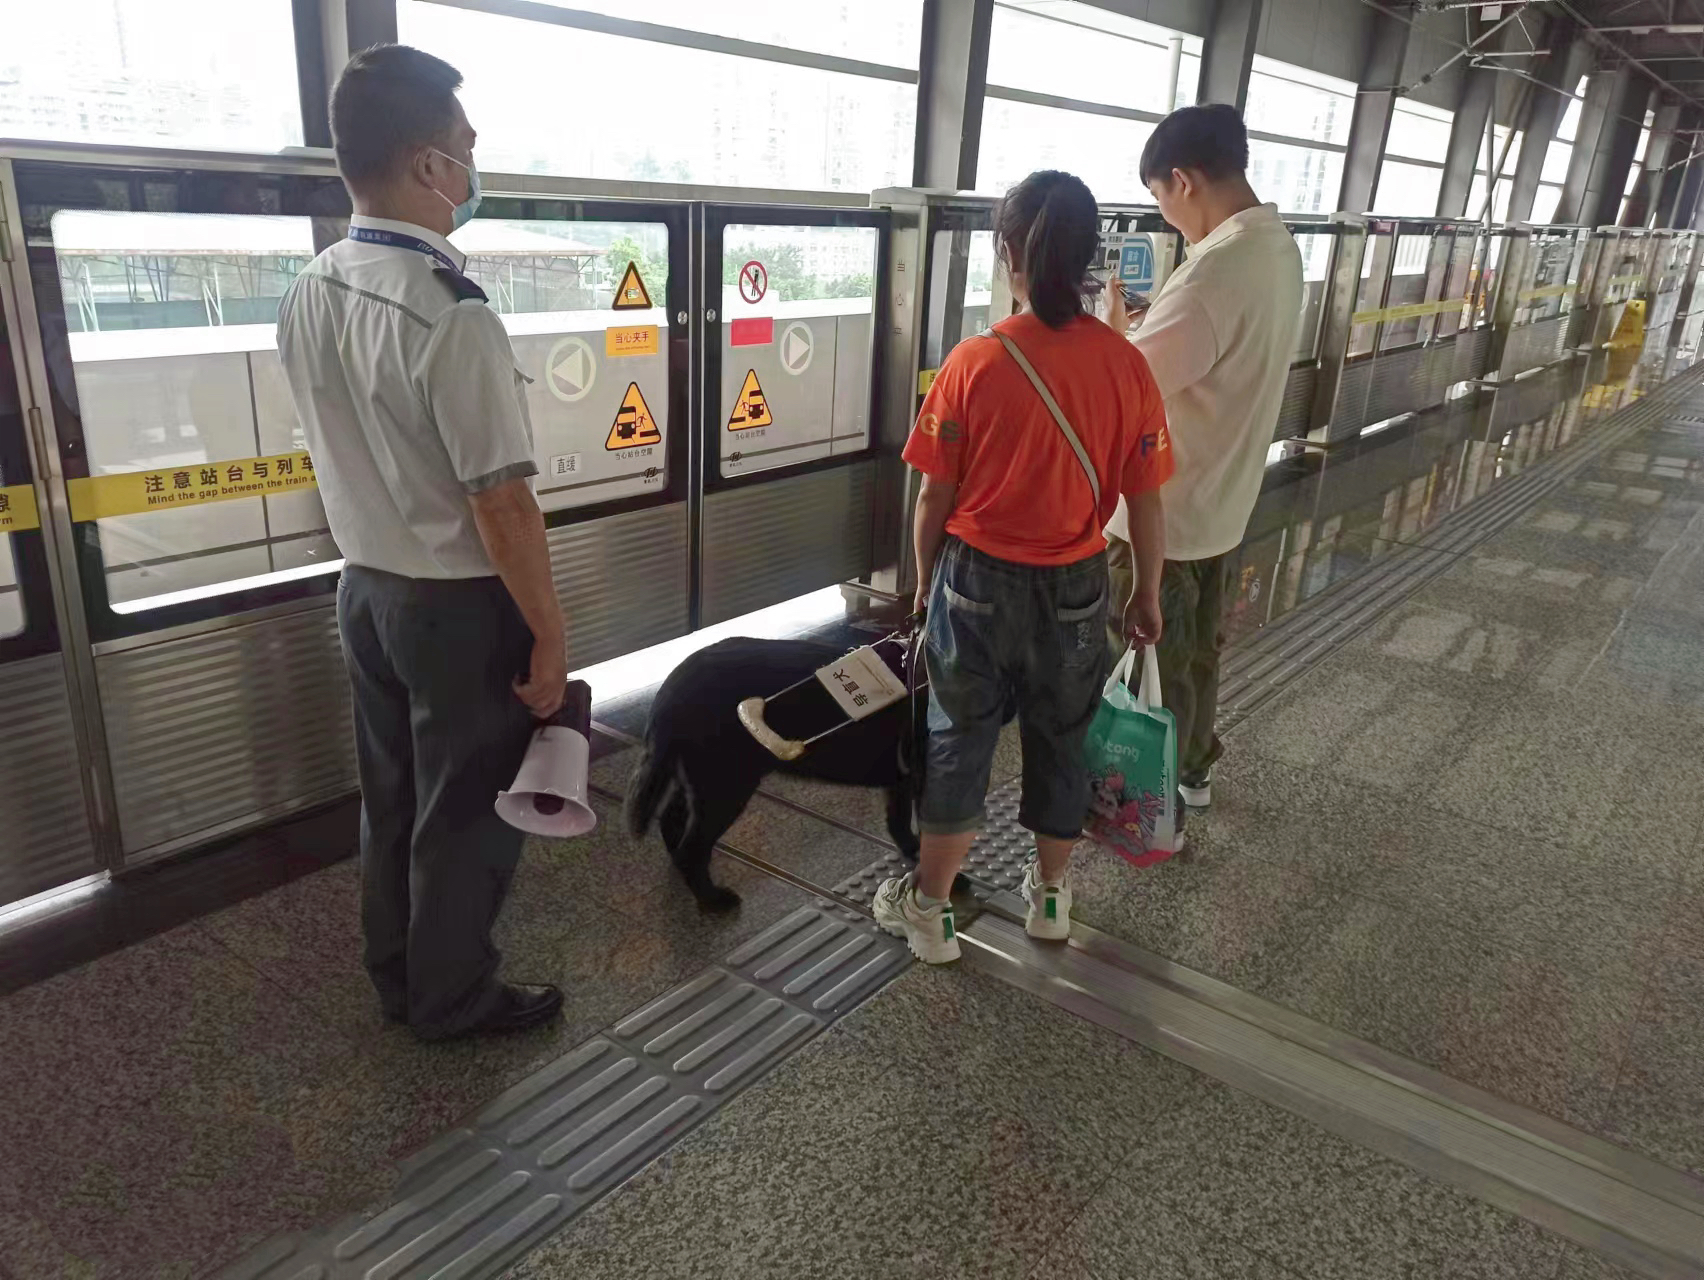 这就是重庆温度！轨道保安护送视障乘客，背后还有段爱心接力故事4